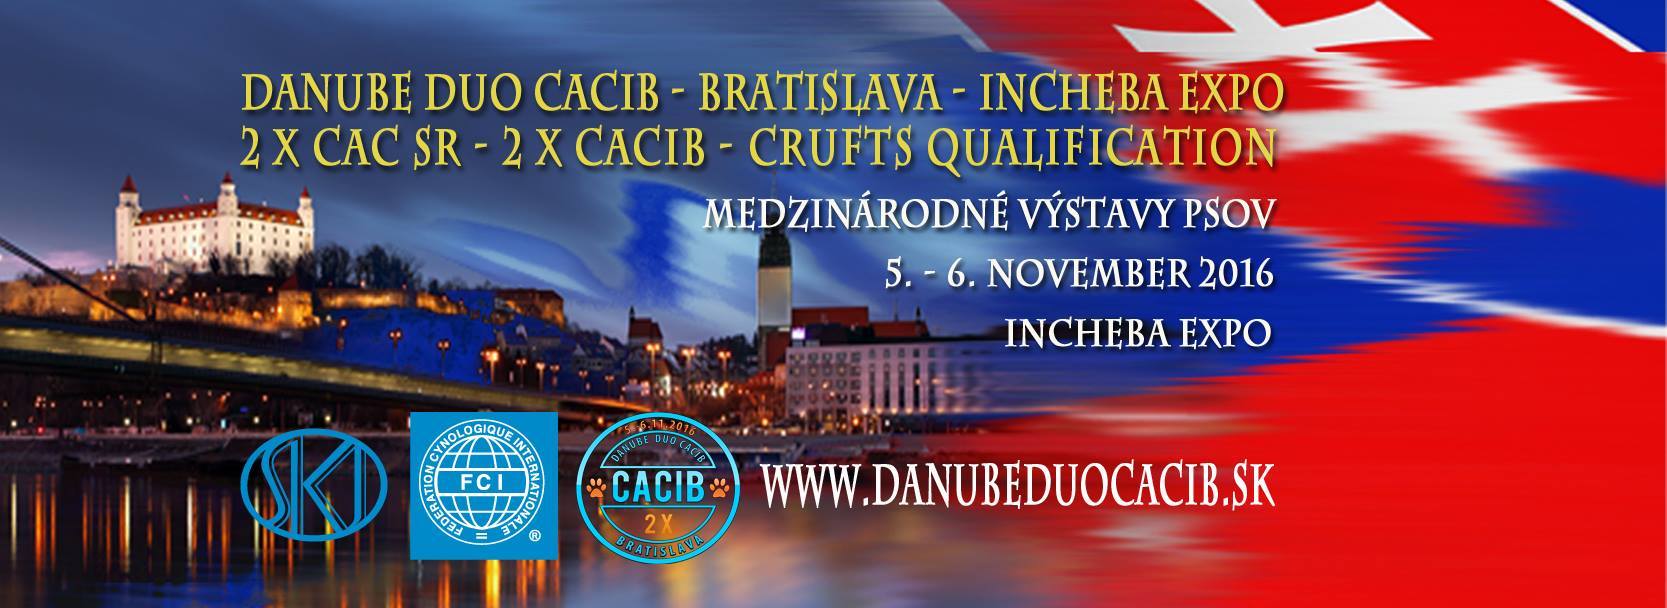 Danube Duo CACIB, Bratislava 2016